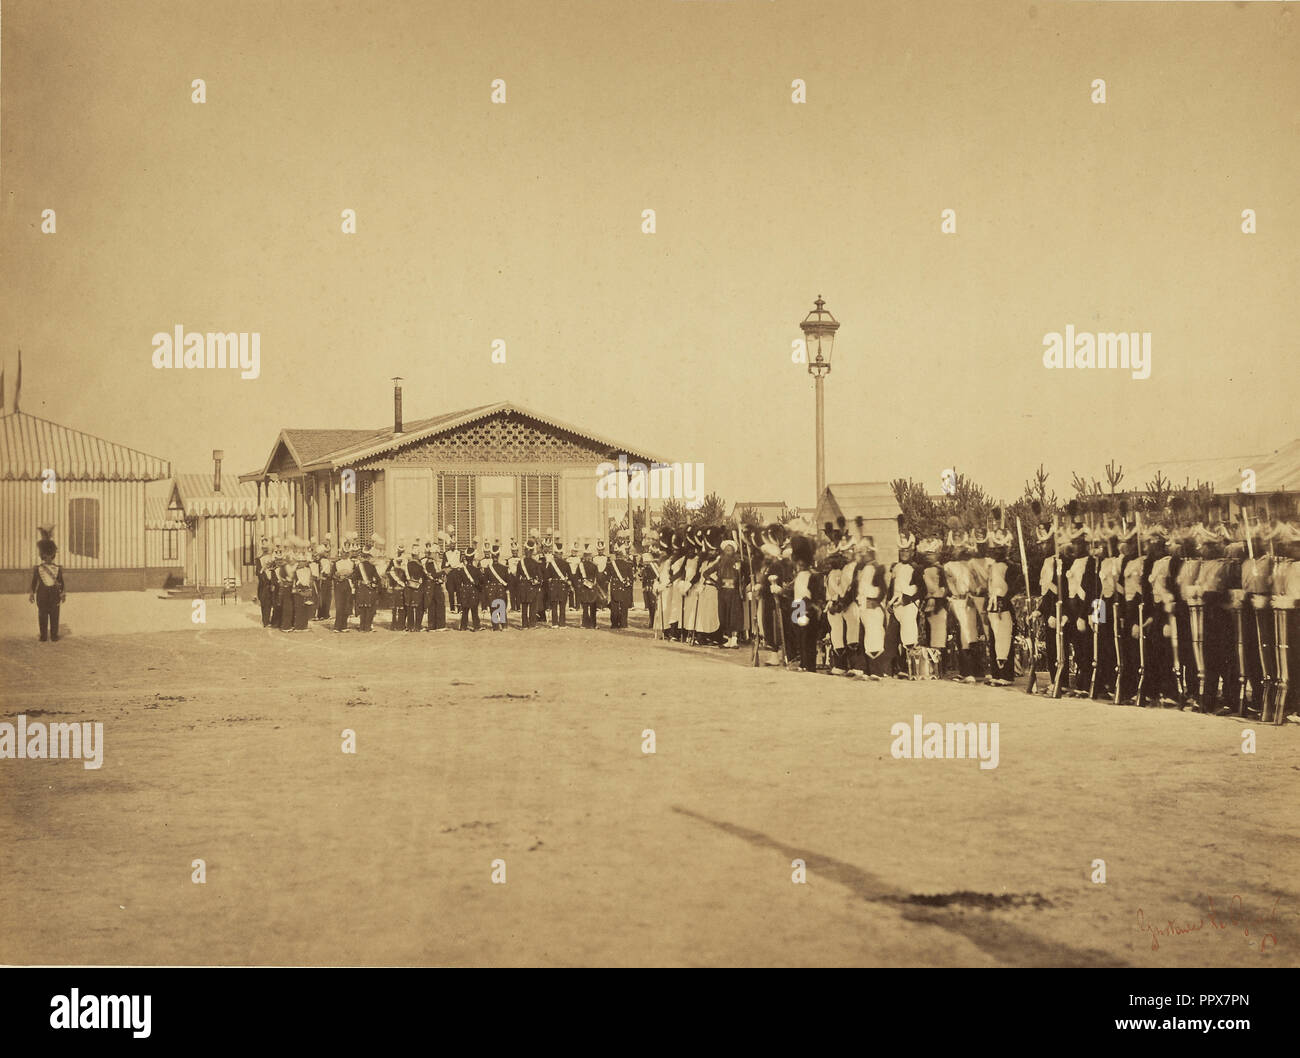 La gamme militaire, camp de Châlons ; Gustave Le Gray, Français, 1820 - 1884, Chalons, France ; 1857 ; à l'albumine argentique Banque D'Images